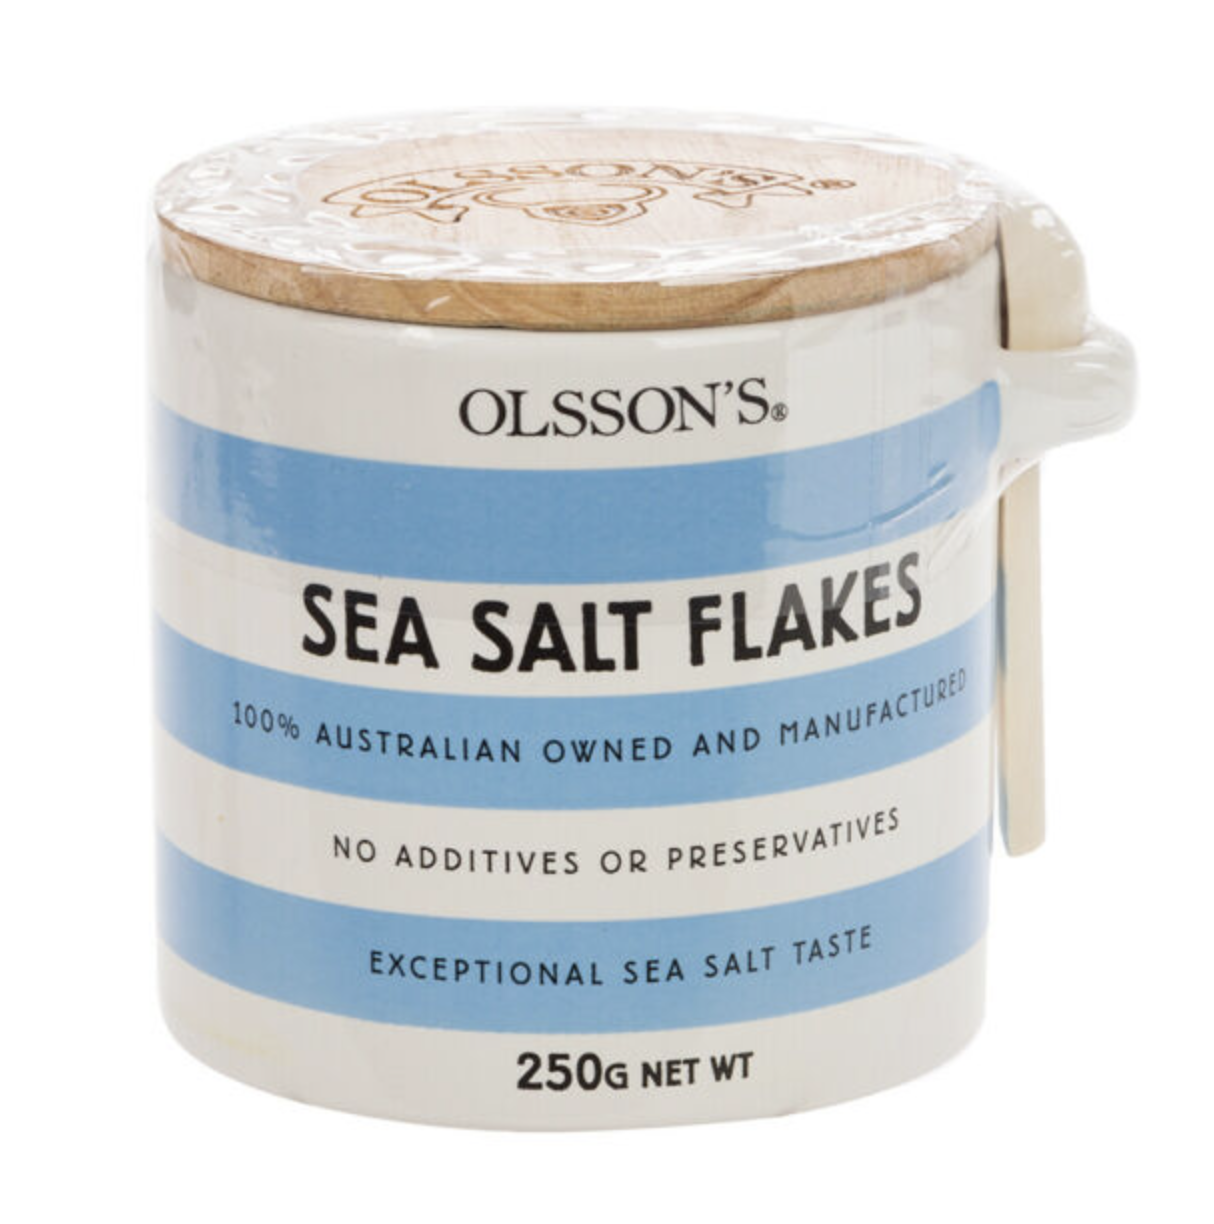 Olsson's Sea Salt Flakes Jar 250g